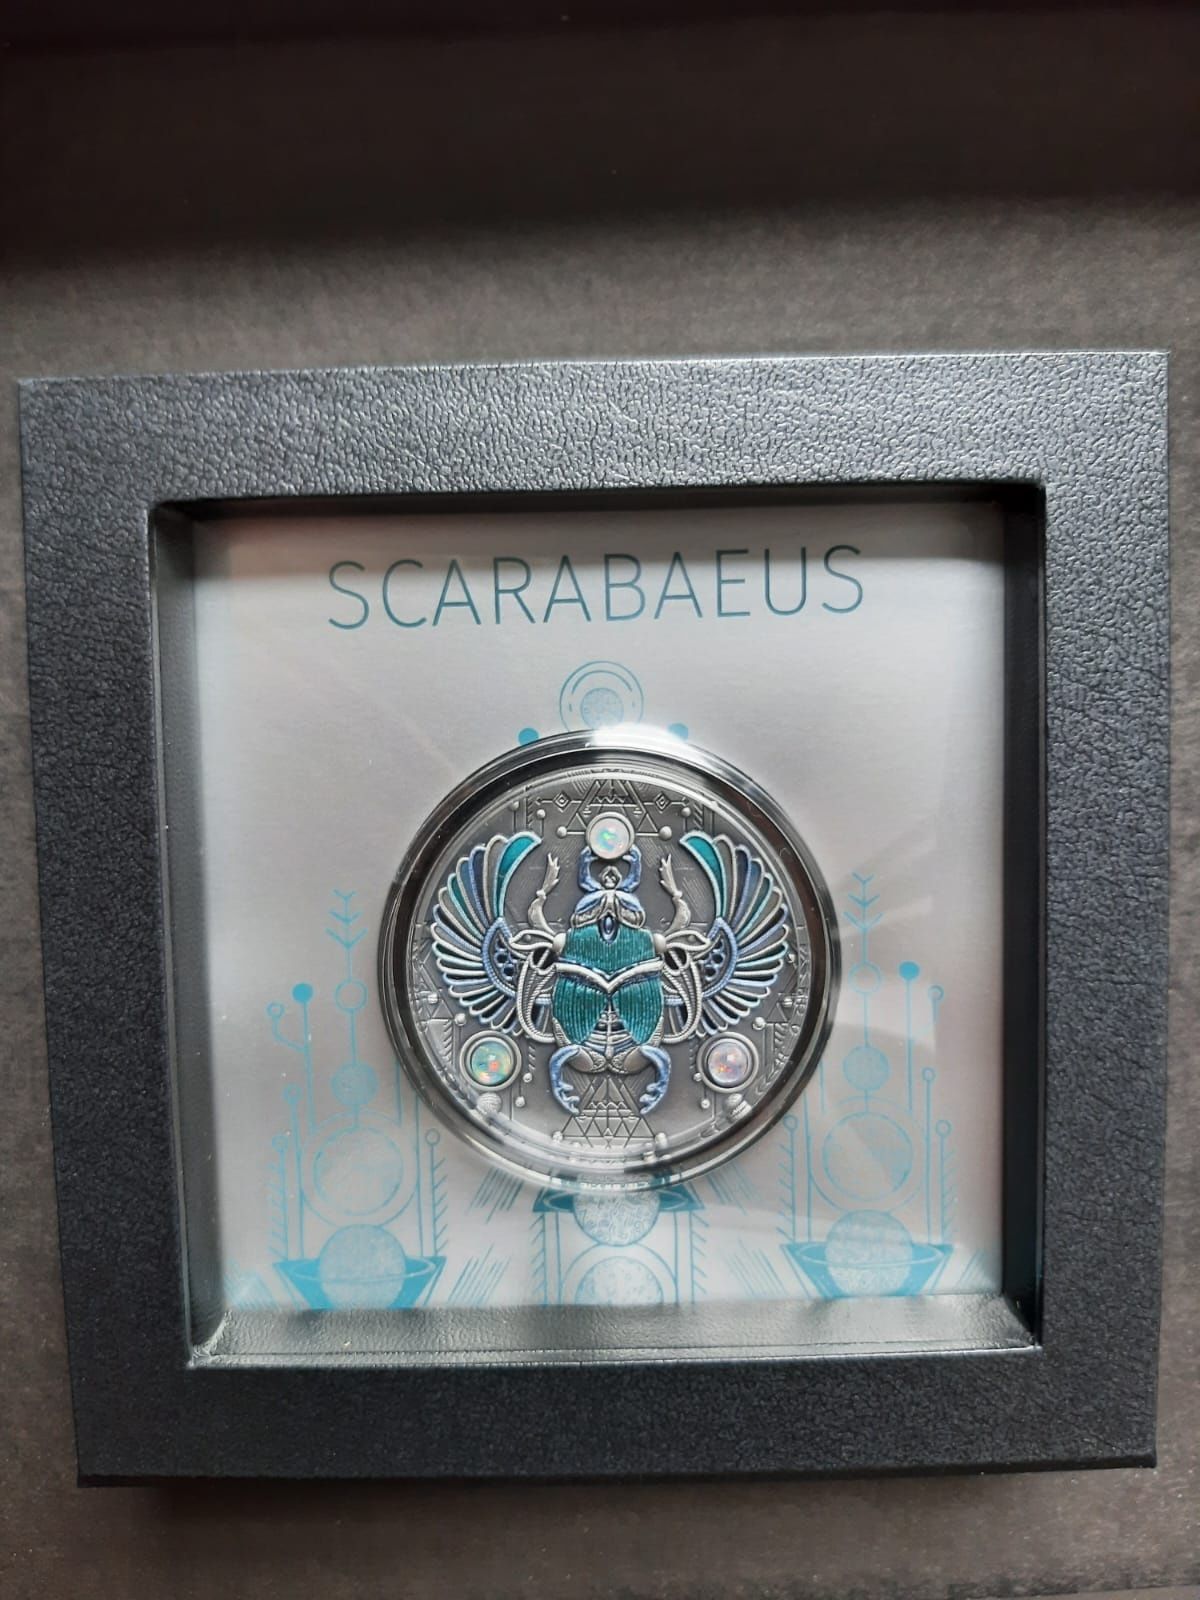 Skarabeusz Kryształowy 5$ moneta kolekcjonerska